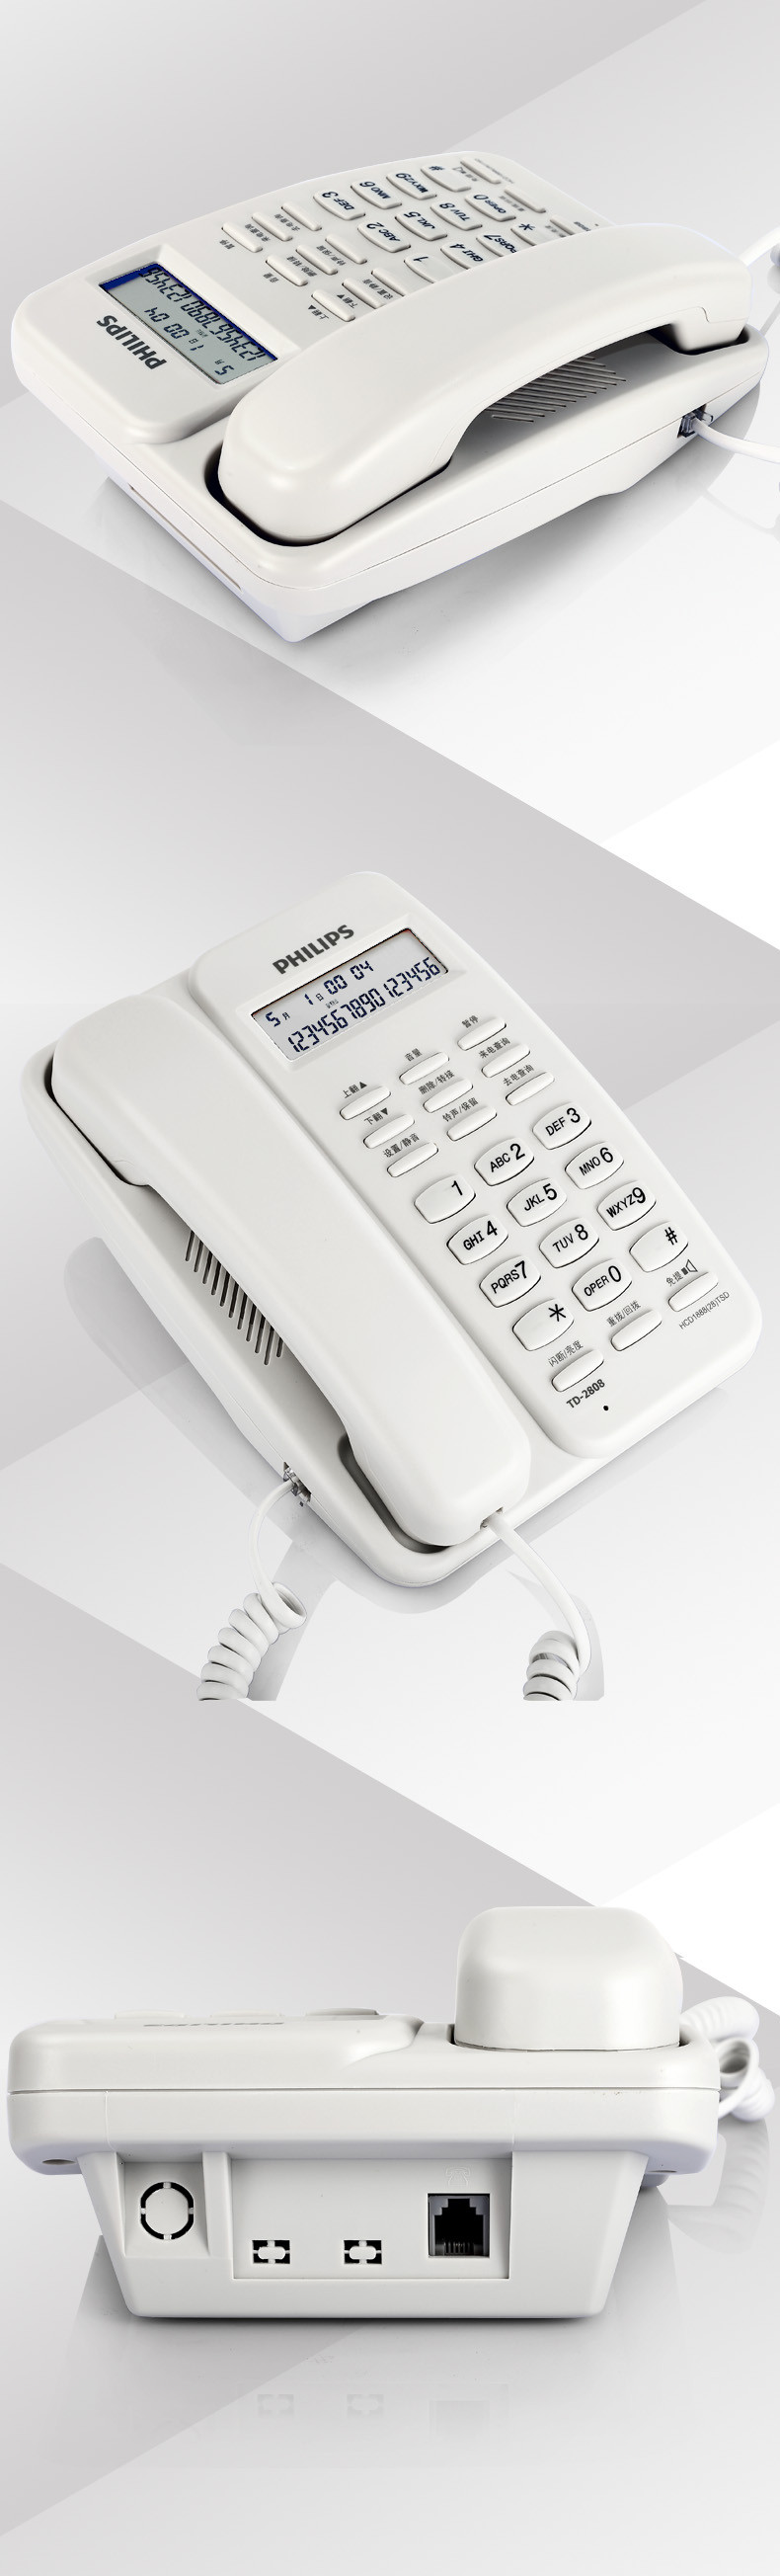 飞利浦(Philips)TD-2808 有绳话机 /普通家用/办公话机/来电显示/免电池/固定电话座机 (黑色)